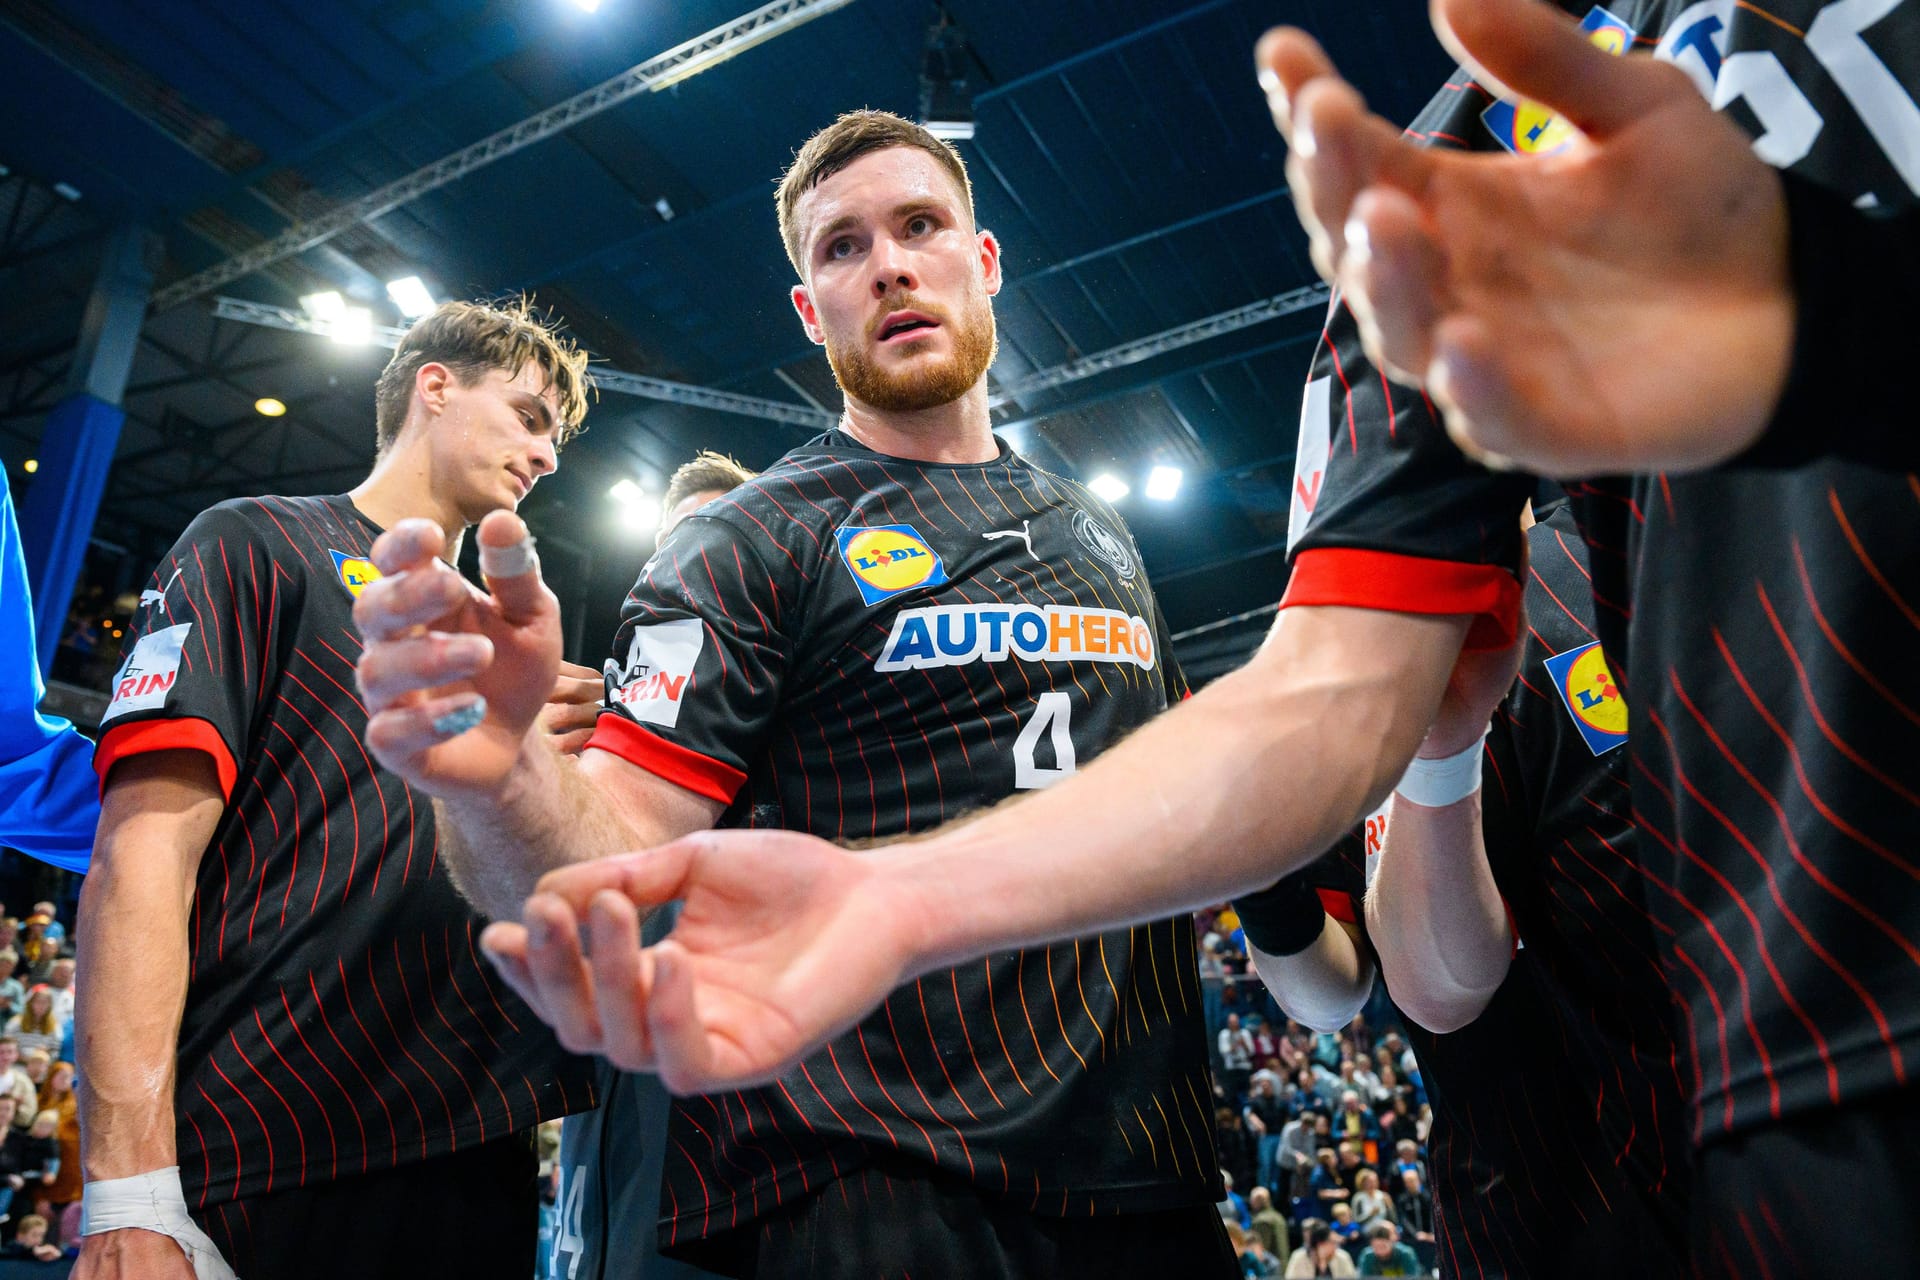 Deutschlands Handballer haben eine erfolgreiche Generalprobe vor der Heim-EM erlebt. Dabei stachen zwei Akteure hervor. Die Einzelkritik.